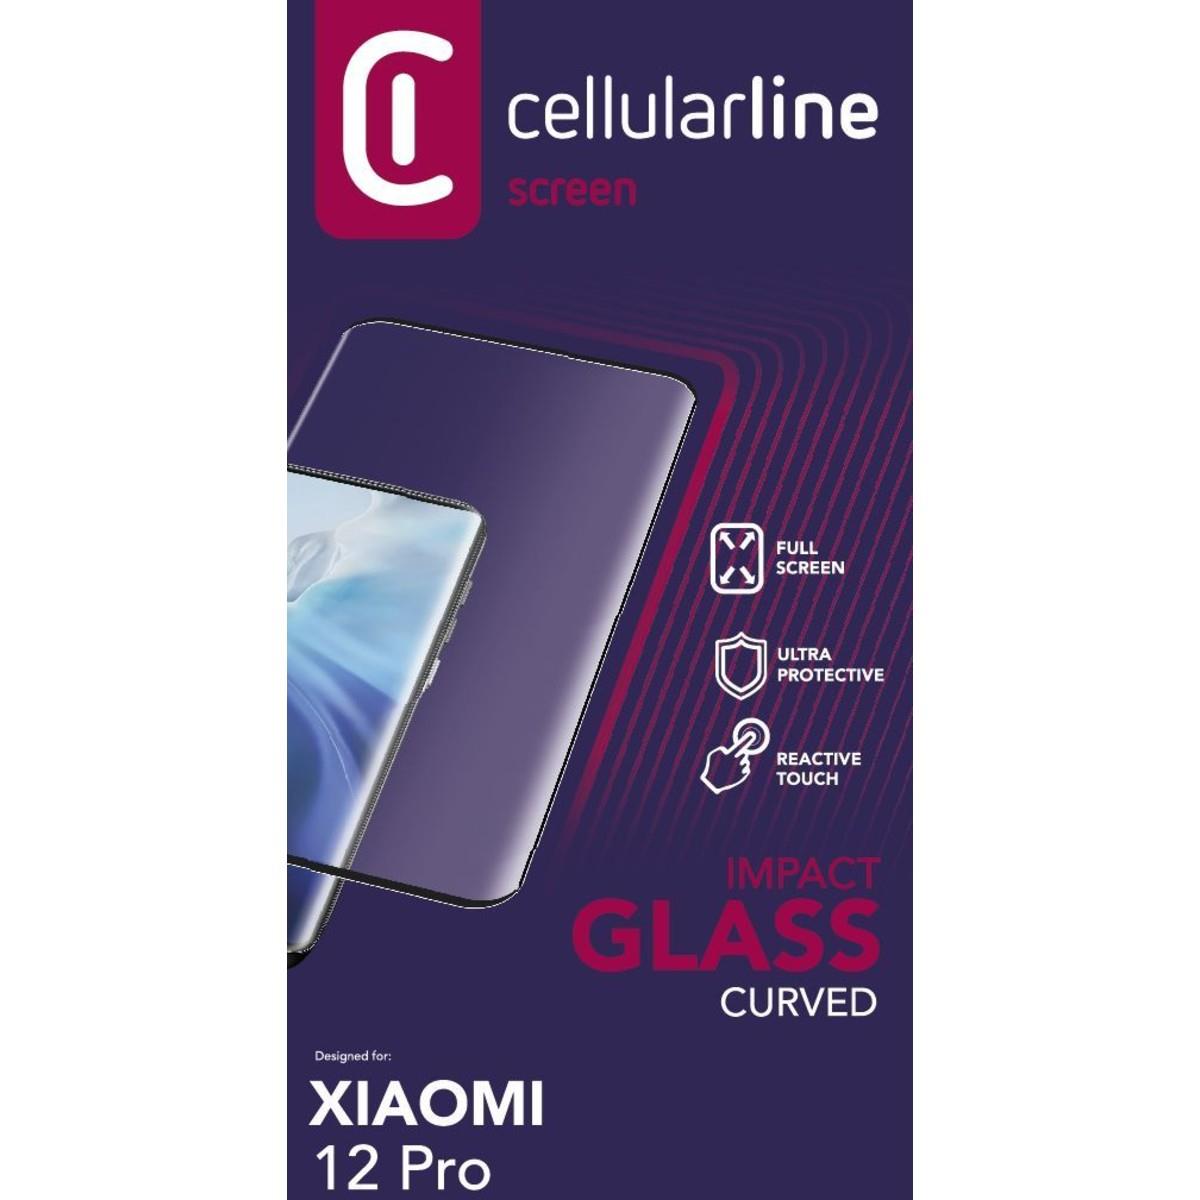 Schutzglas IMPACT GLASS CURVED für Xiaomi 12 Pro